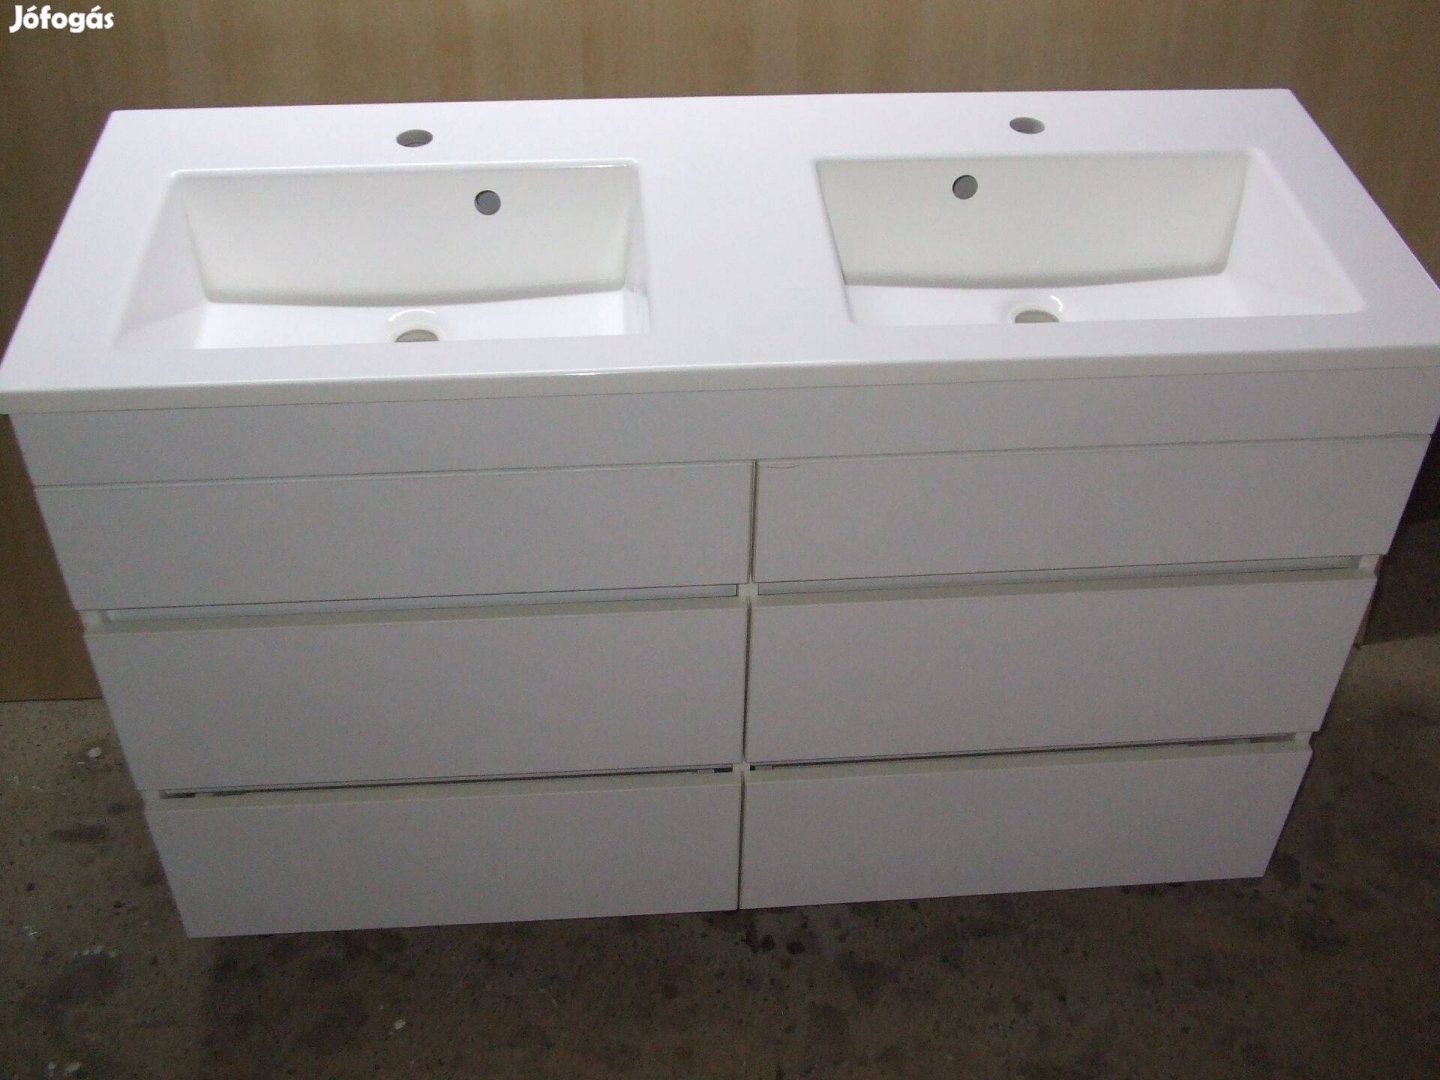 Új dupla mosdószekrény 6 fiókos magasfényű fehér bútor 120 cm